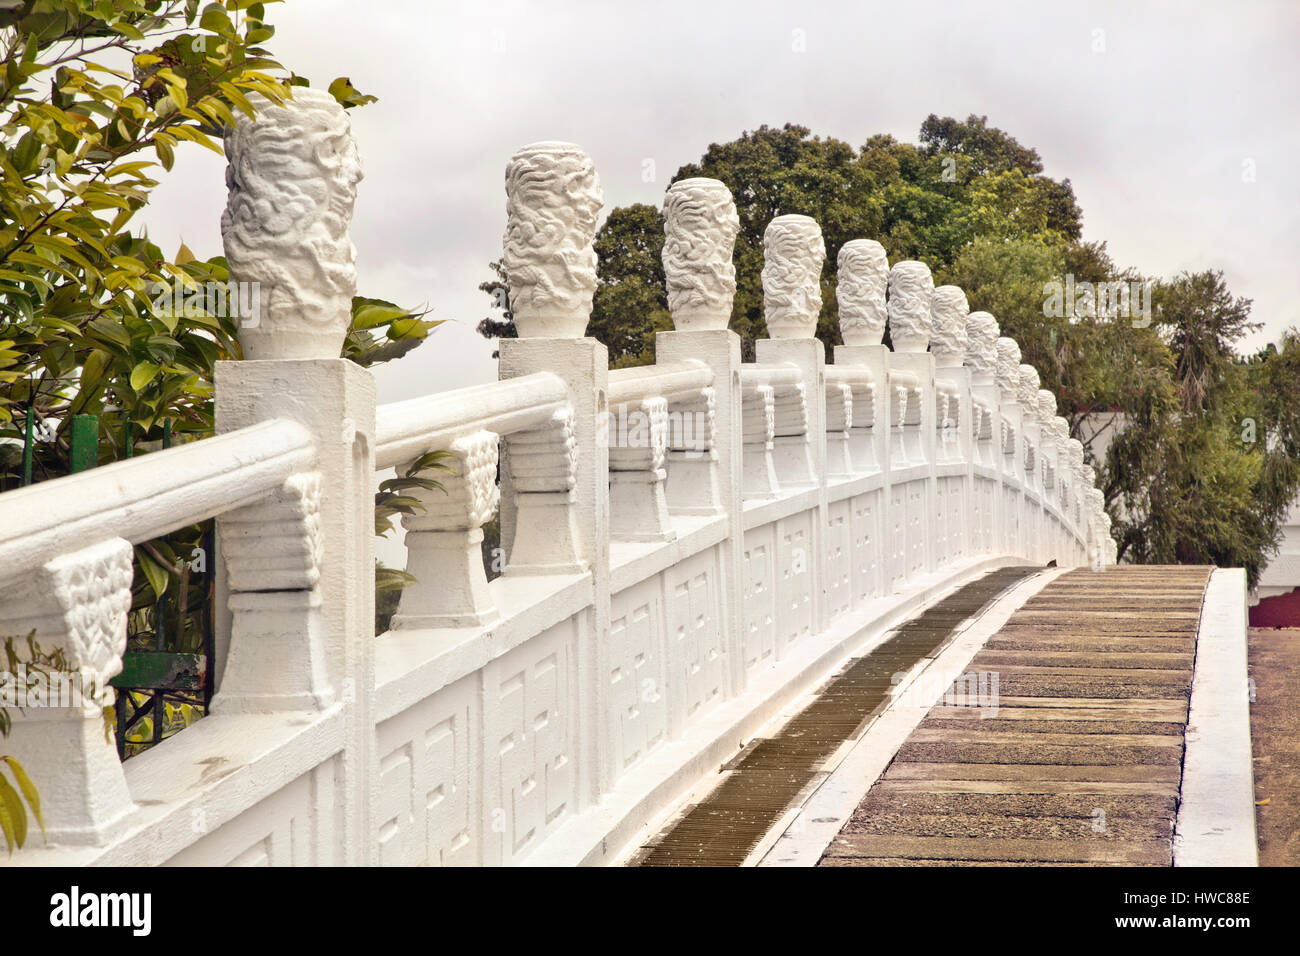 Le 'Bai Hong Qiao' Bridge, les Jardins Chinois, à Singapour, le style de l'echos 17 Arch Bridge au Palais d'été à Beijing, en Chine. Banque D'Images